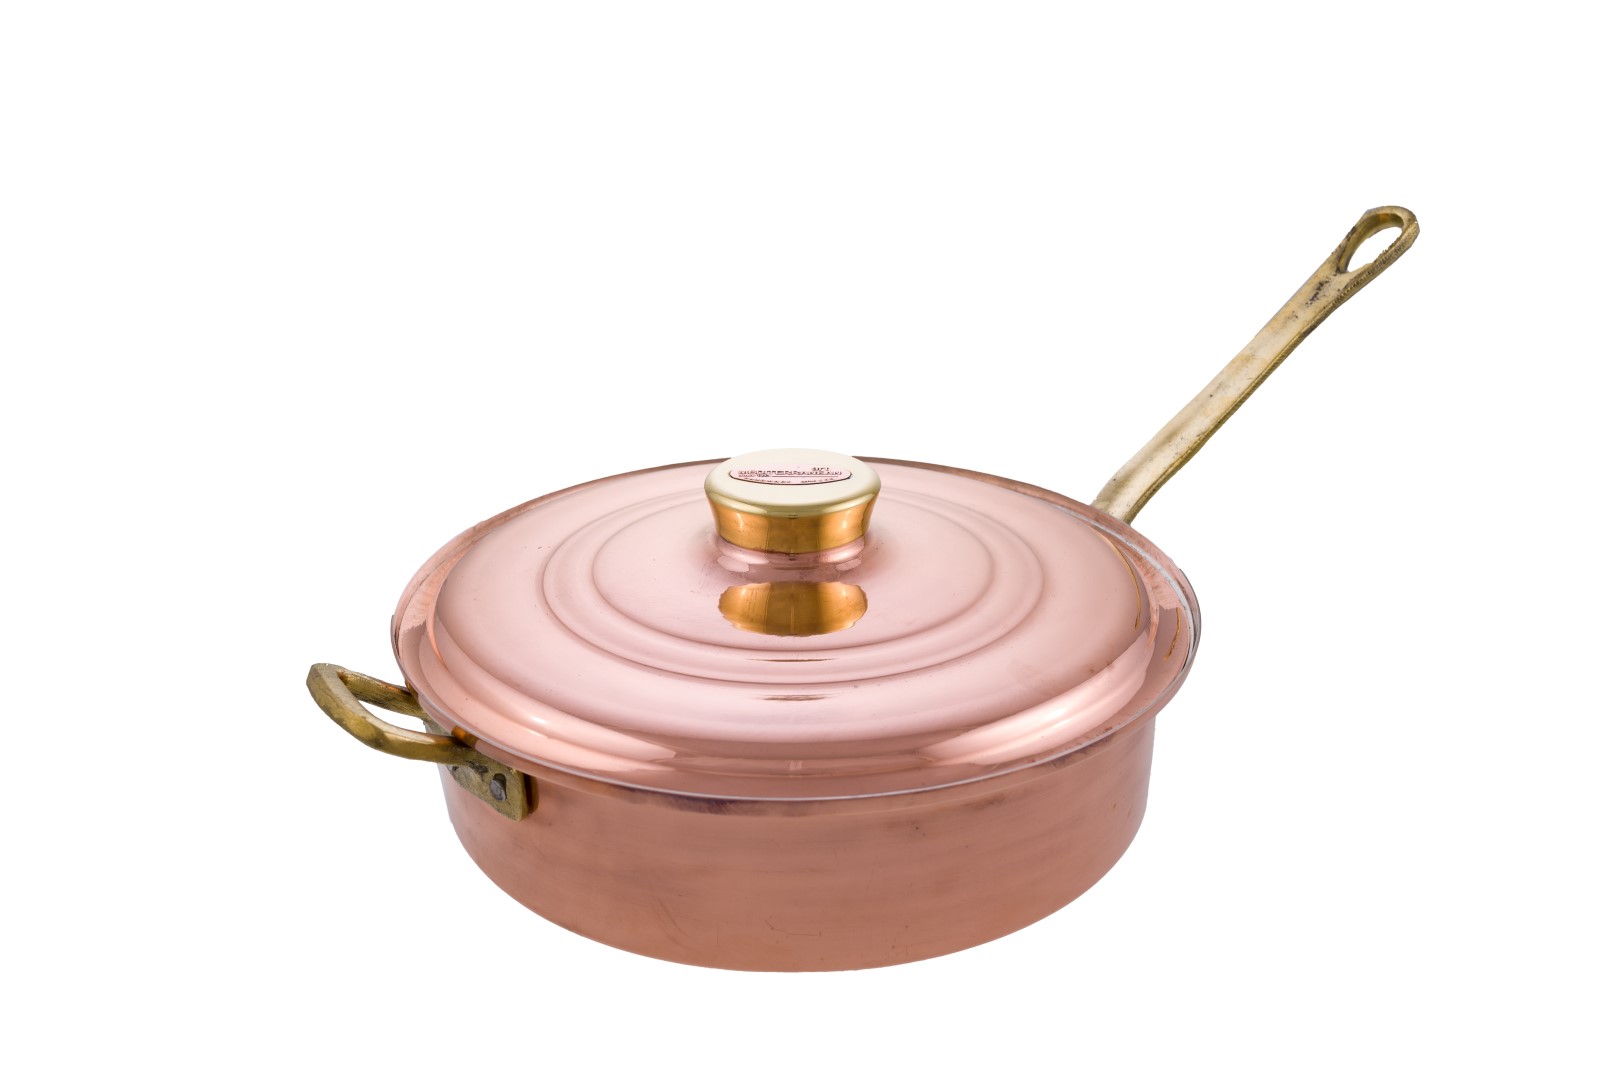 Copper Saute Pots with long handle